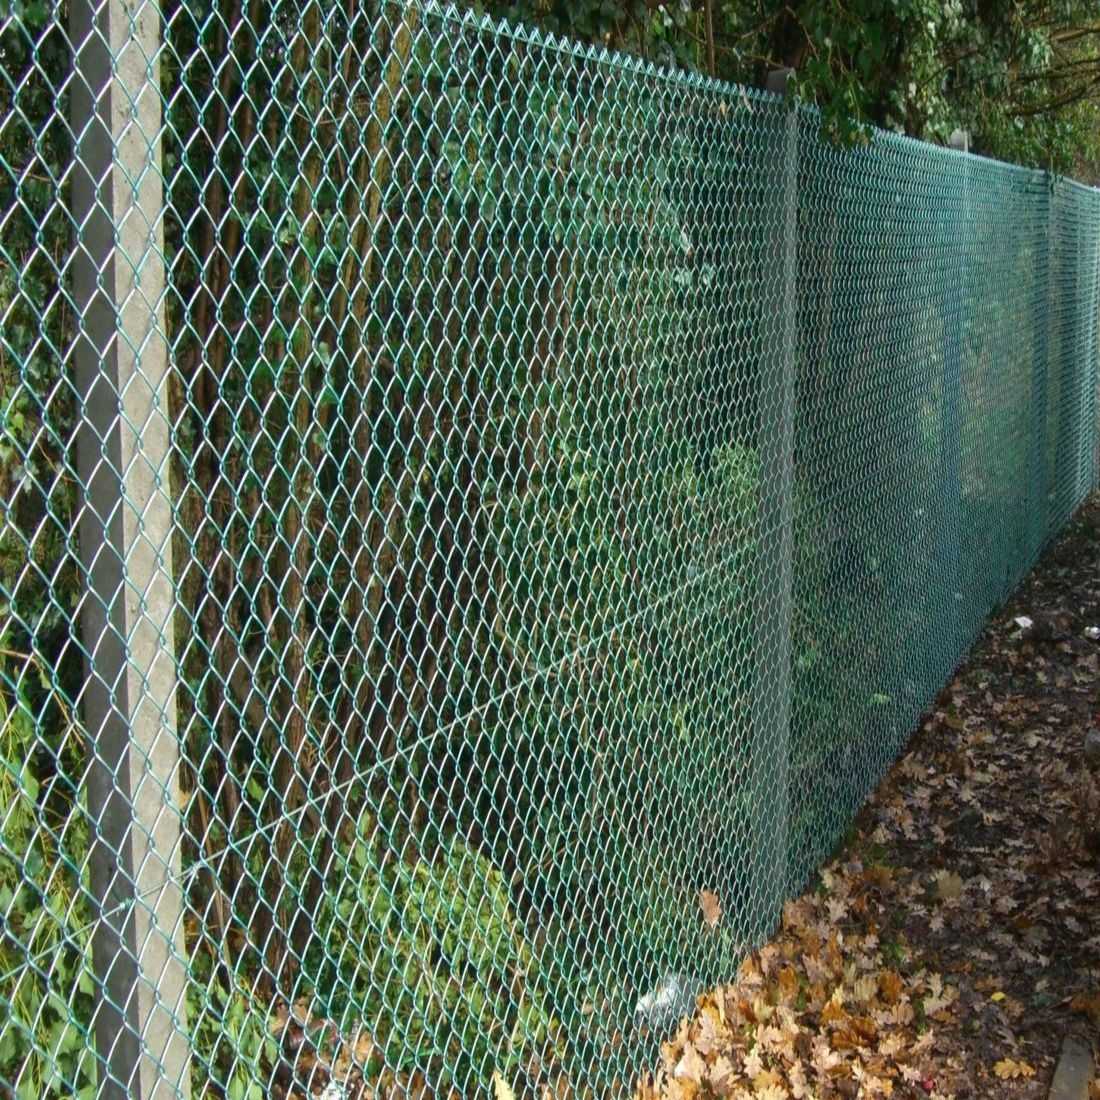 Забор из сетки рабицы: виды сетки, как натянуть, закрепить